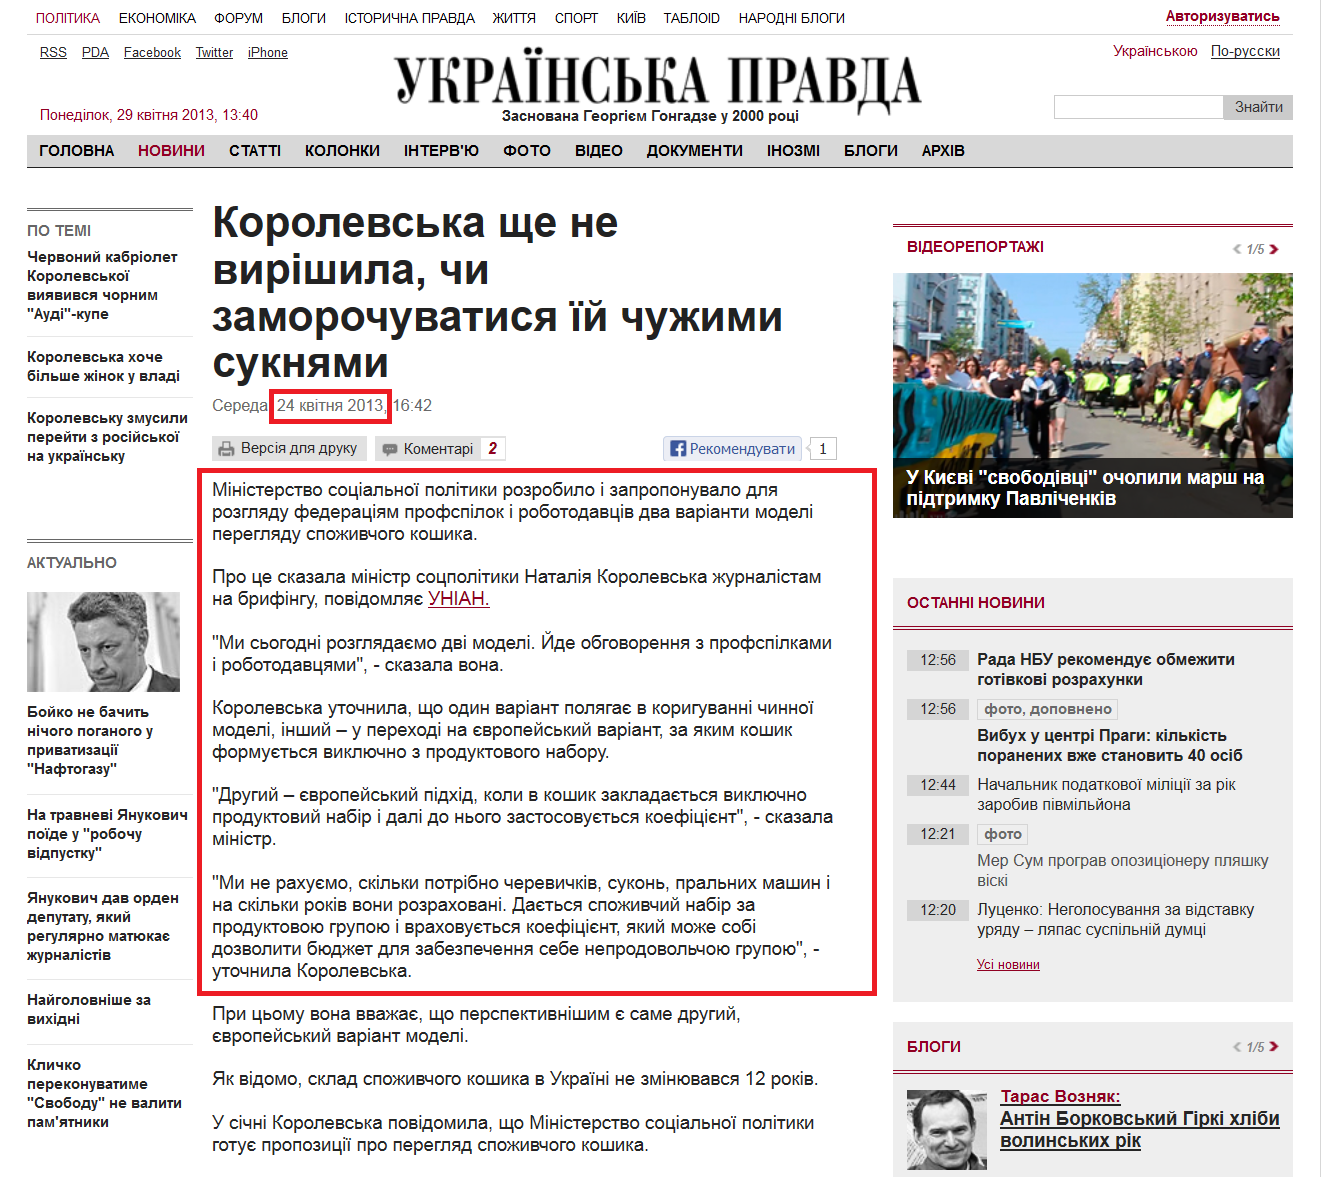 http://www.pravda.com.ua/news/2013/04/24/6988883/